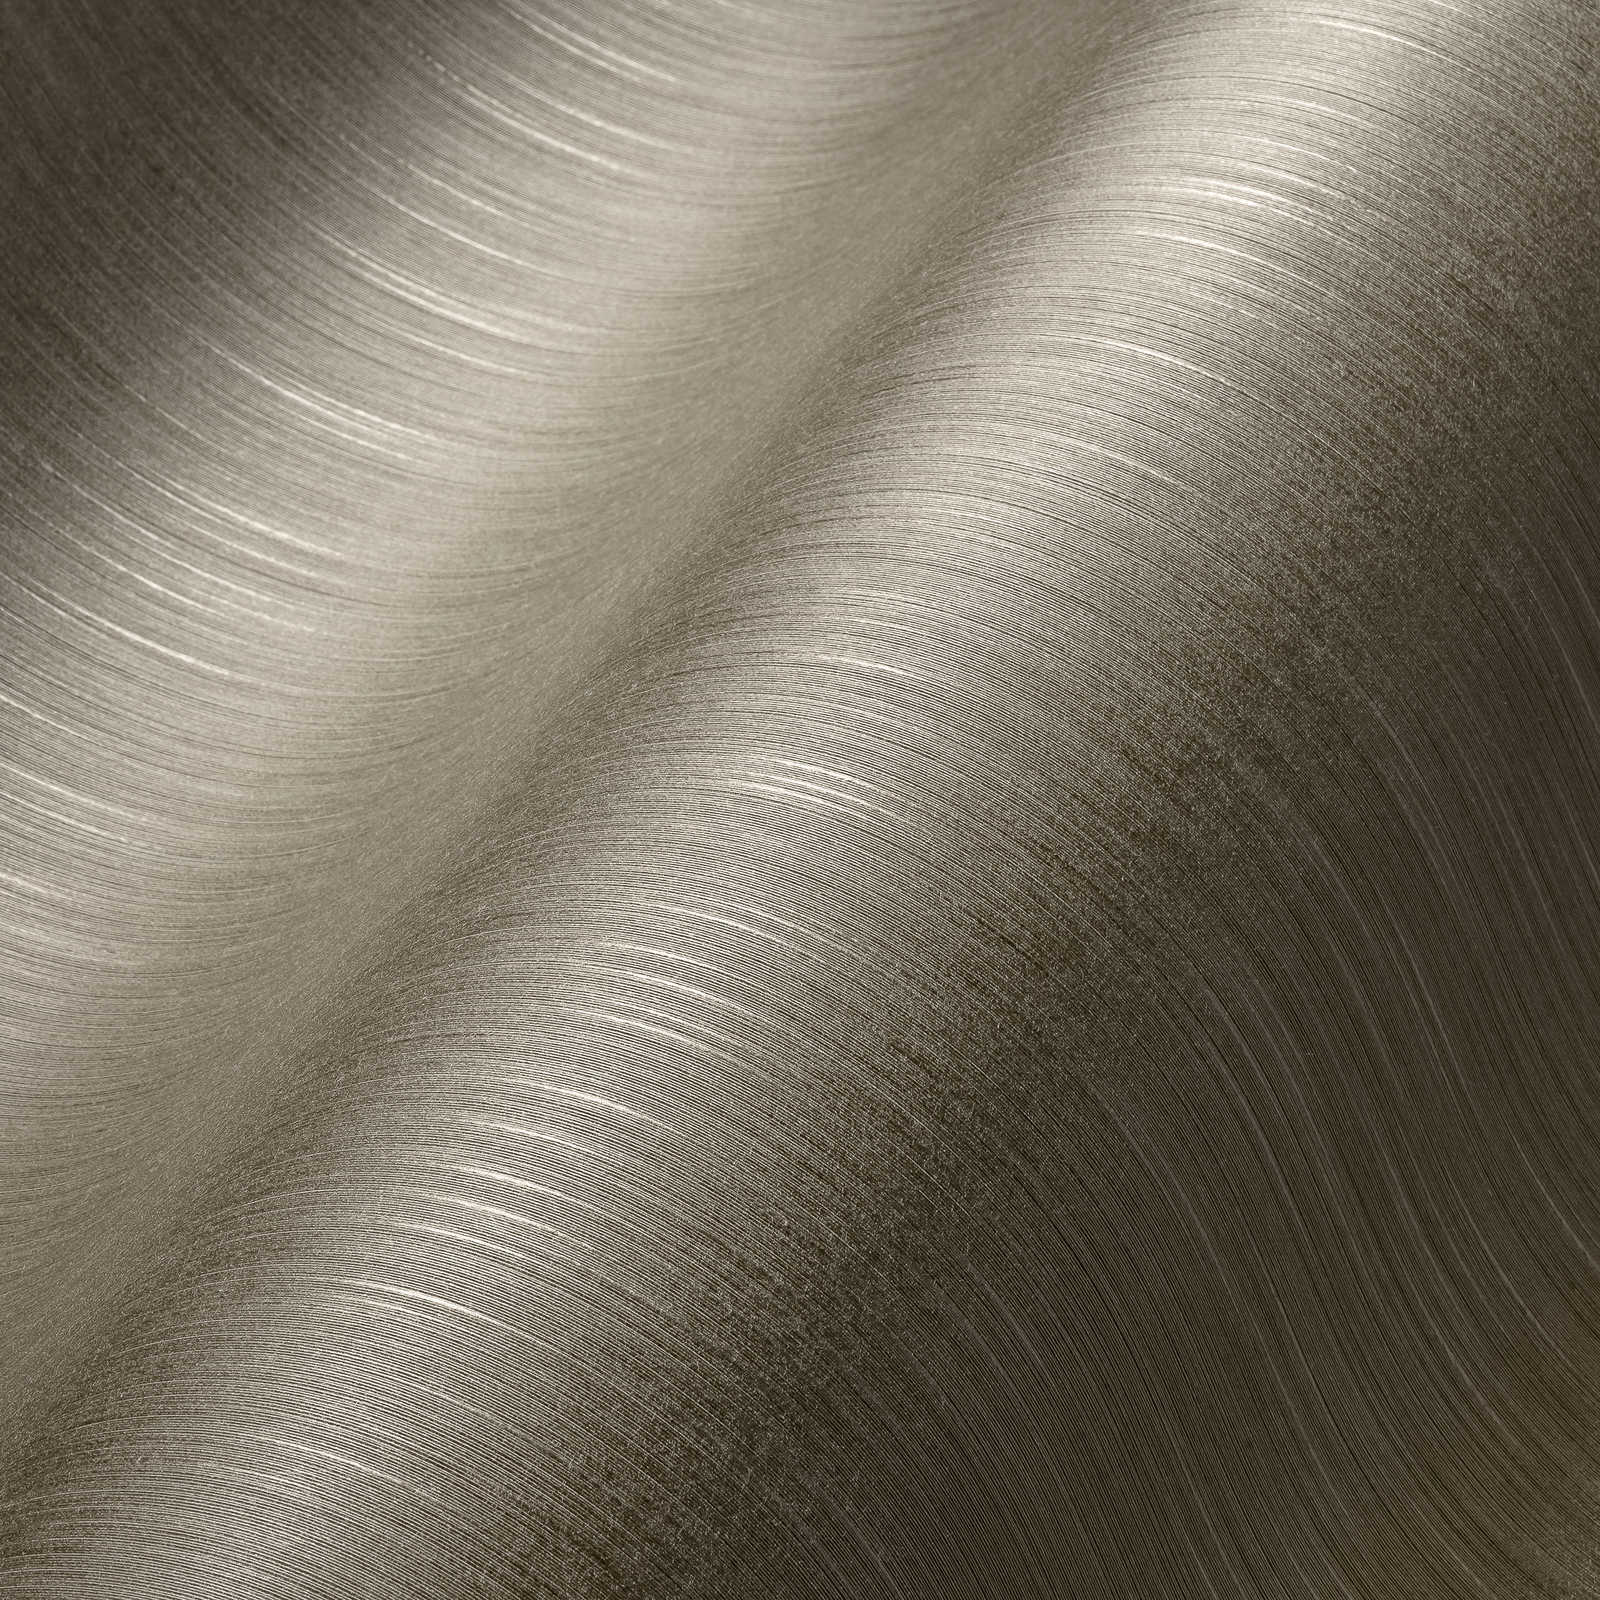             Textildesign Tapete Grau-Braun mit meliertem Muster
        